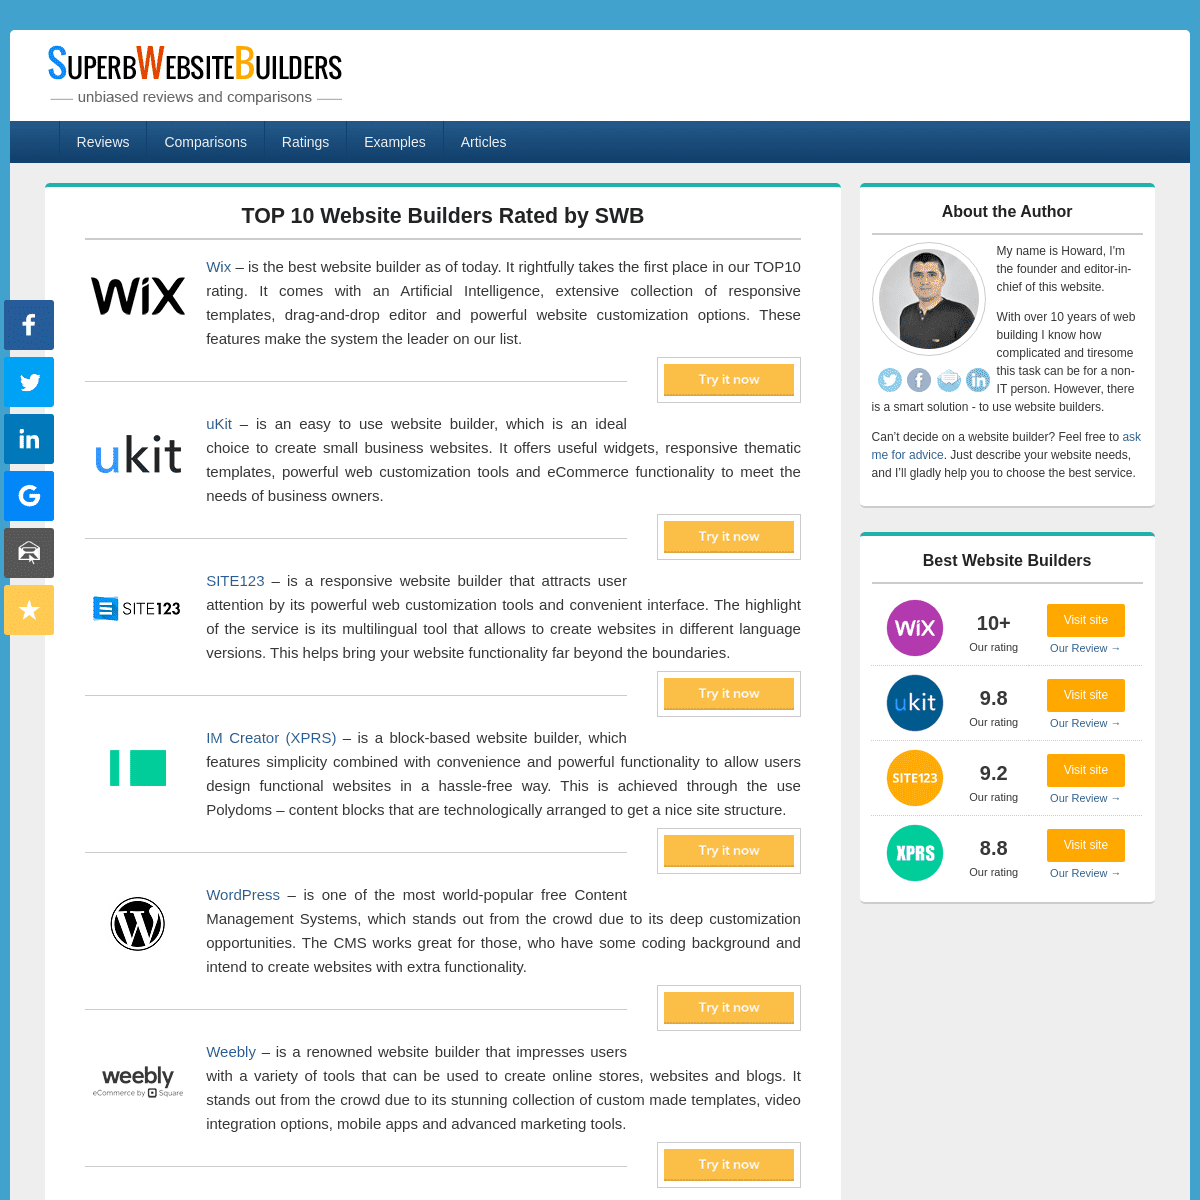 A complete backup of https://superbwebsitebuilders.com